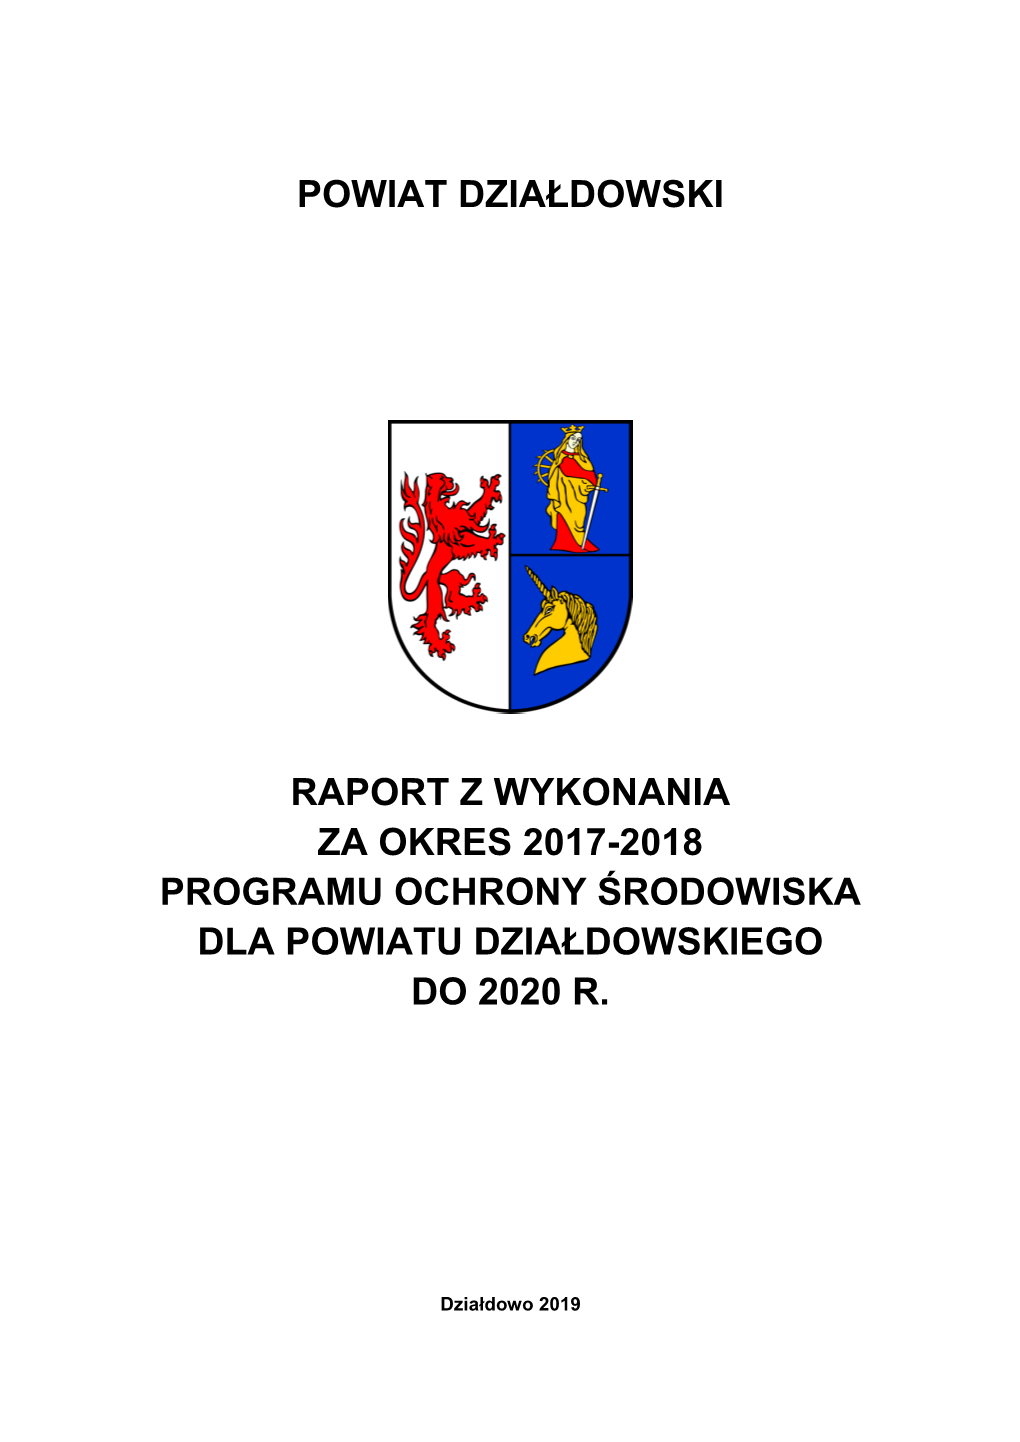 Powiat Działdowski Raport Z Wykonania Za Okres 2017